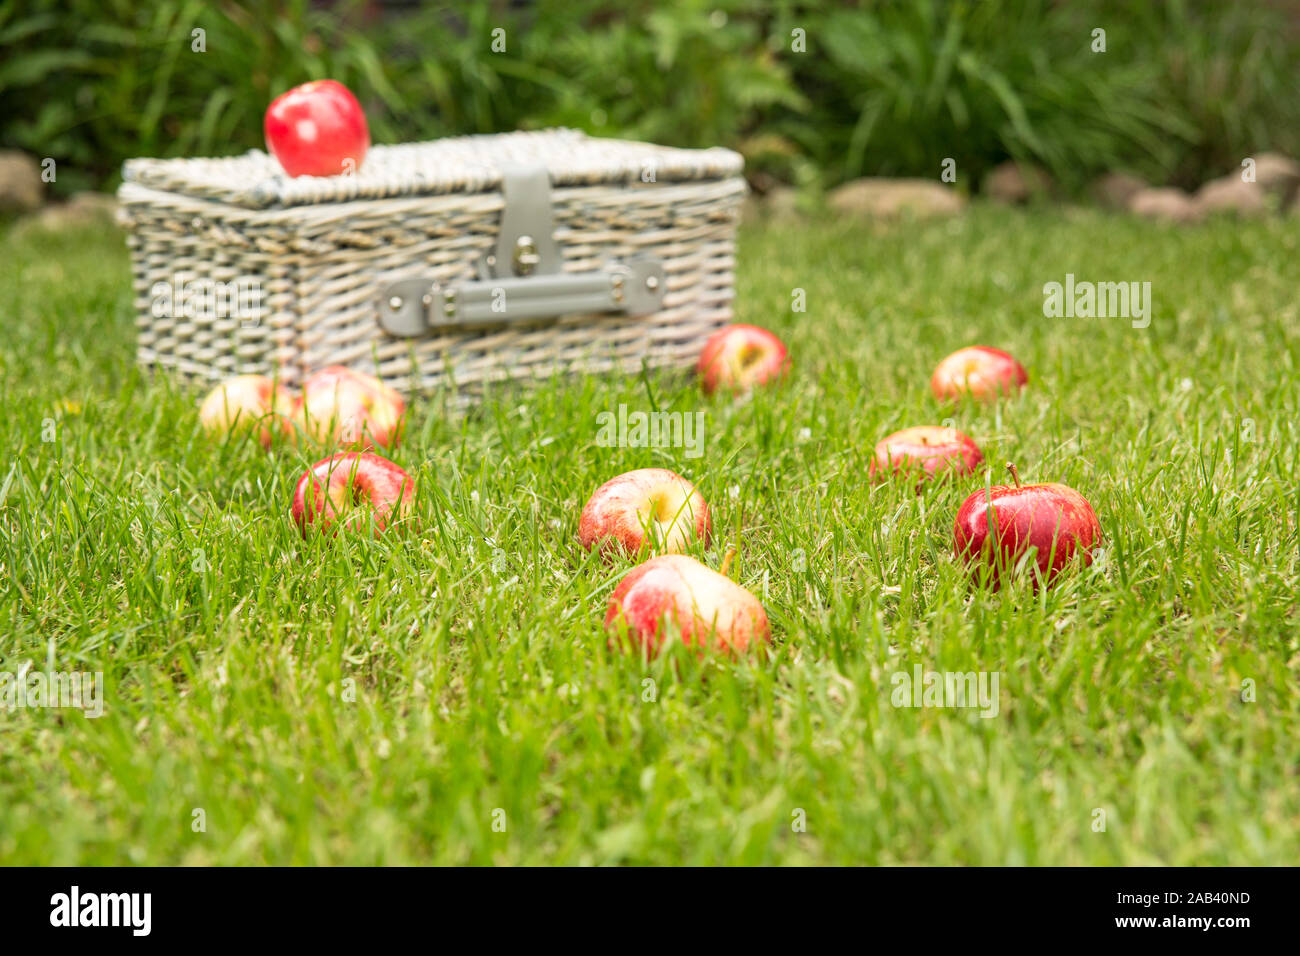 Frische Äpfel zusammen mit einem Picknickkorb auf grünen Rasen |Fresh apples along with a picnic basket on green grass| Stock Photo